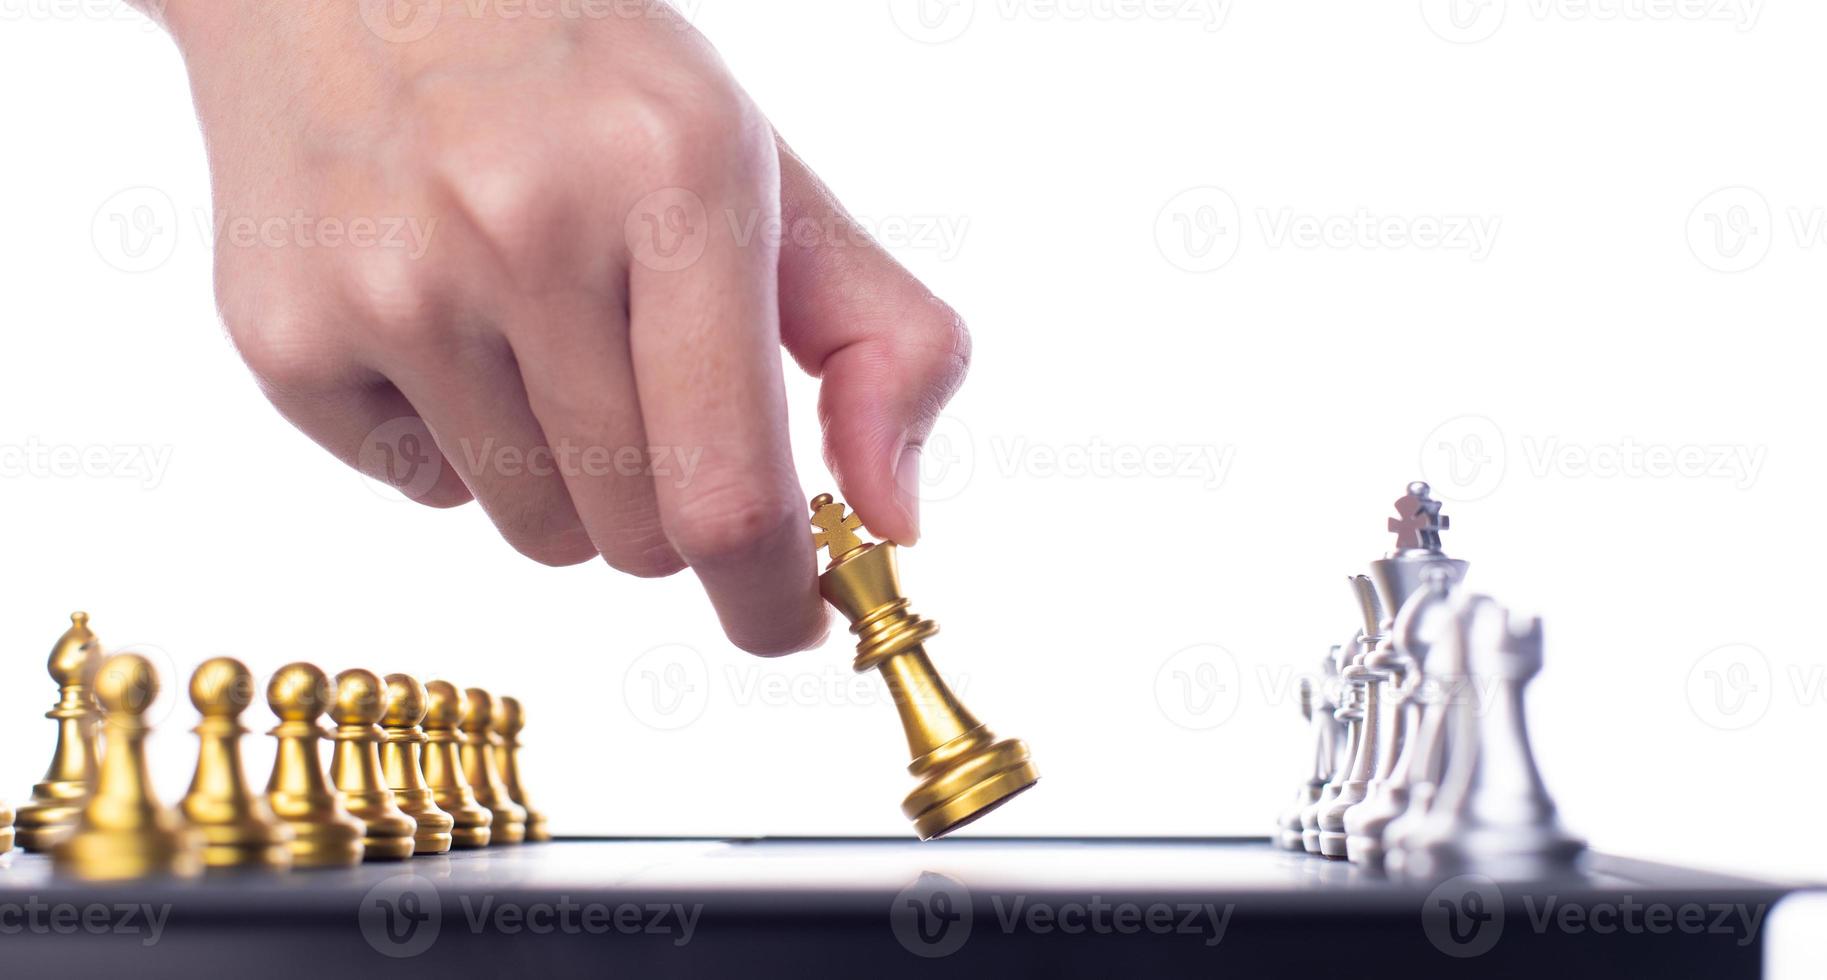 företag kvinna spela schack till Framgång. ledare använda sig av strategi spel till utmaning konkurrent med intelligens ledarskap kraft till flytta kung till seger med förvaltning team aning slåss till vinna, kopia Plats foto